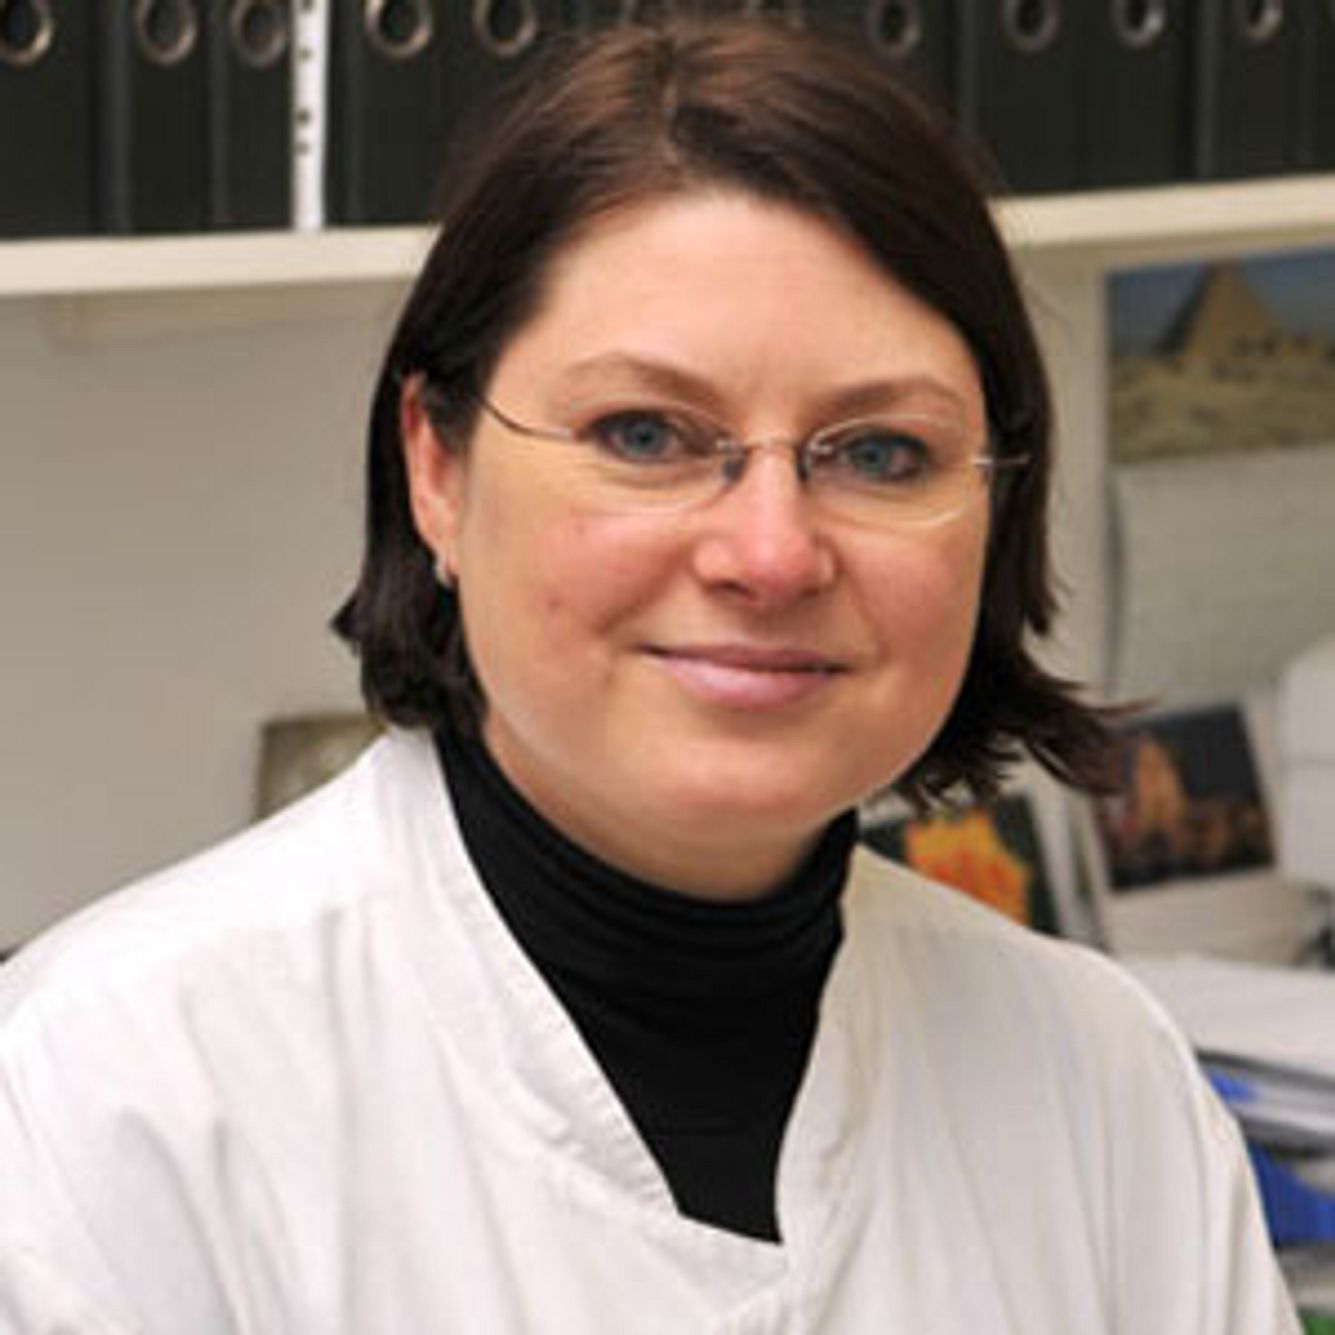 Prof. Dr. Sonja Ständer leitet in Münster eine Pruritus-Sprechstunde